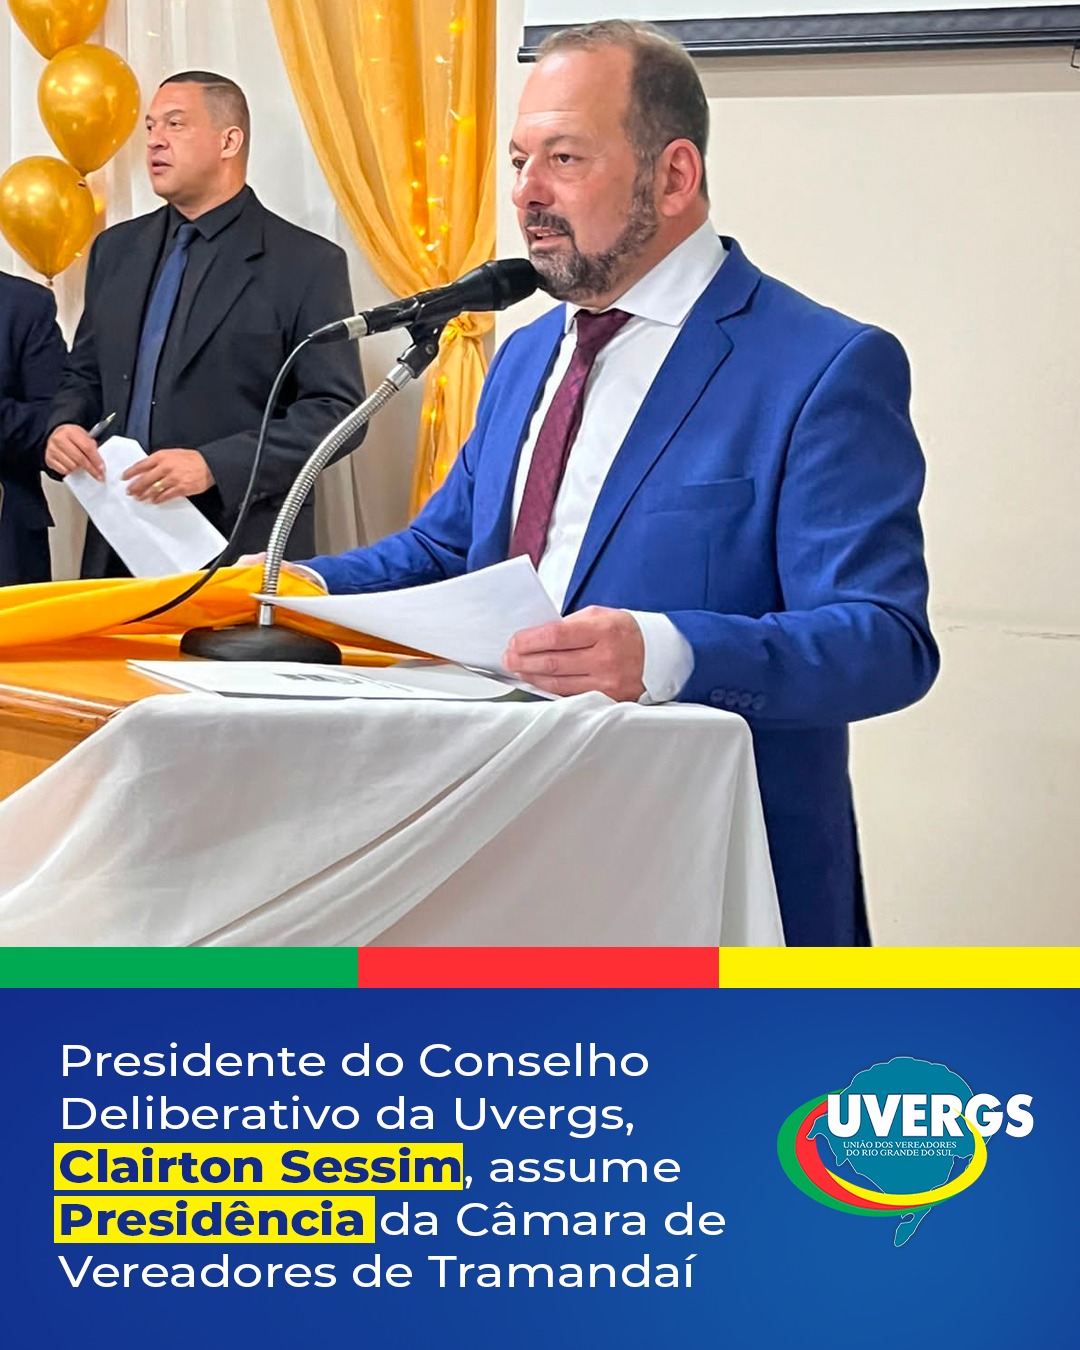 Presidente do Conselho Deliberativo da Uvergs, Clairton Sessim, assume Presidência da Câmara de Vereadores de Tramandaí